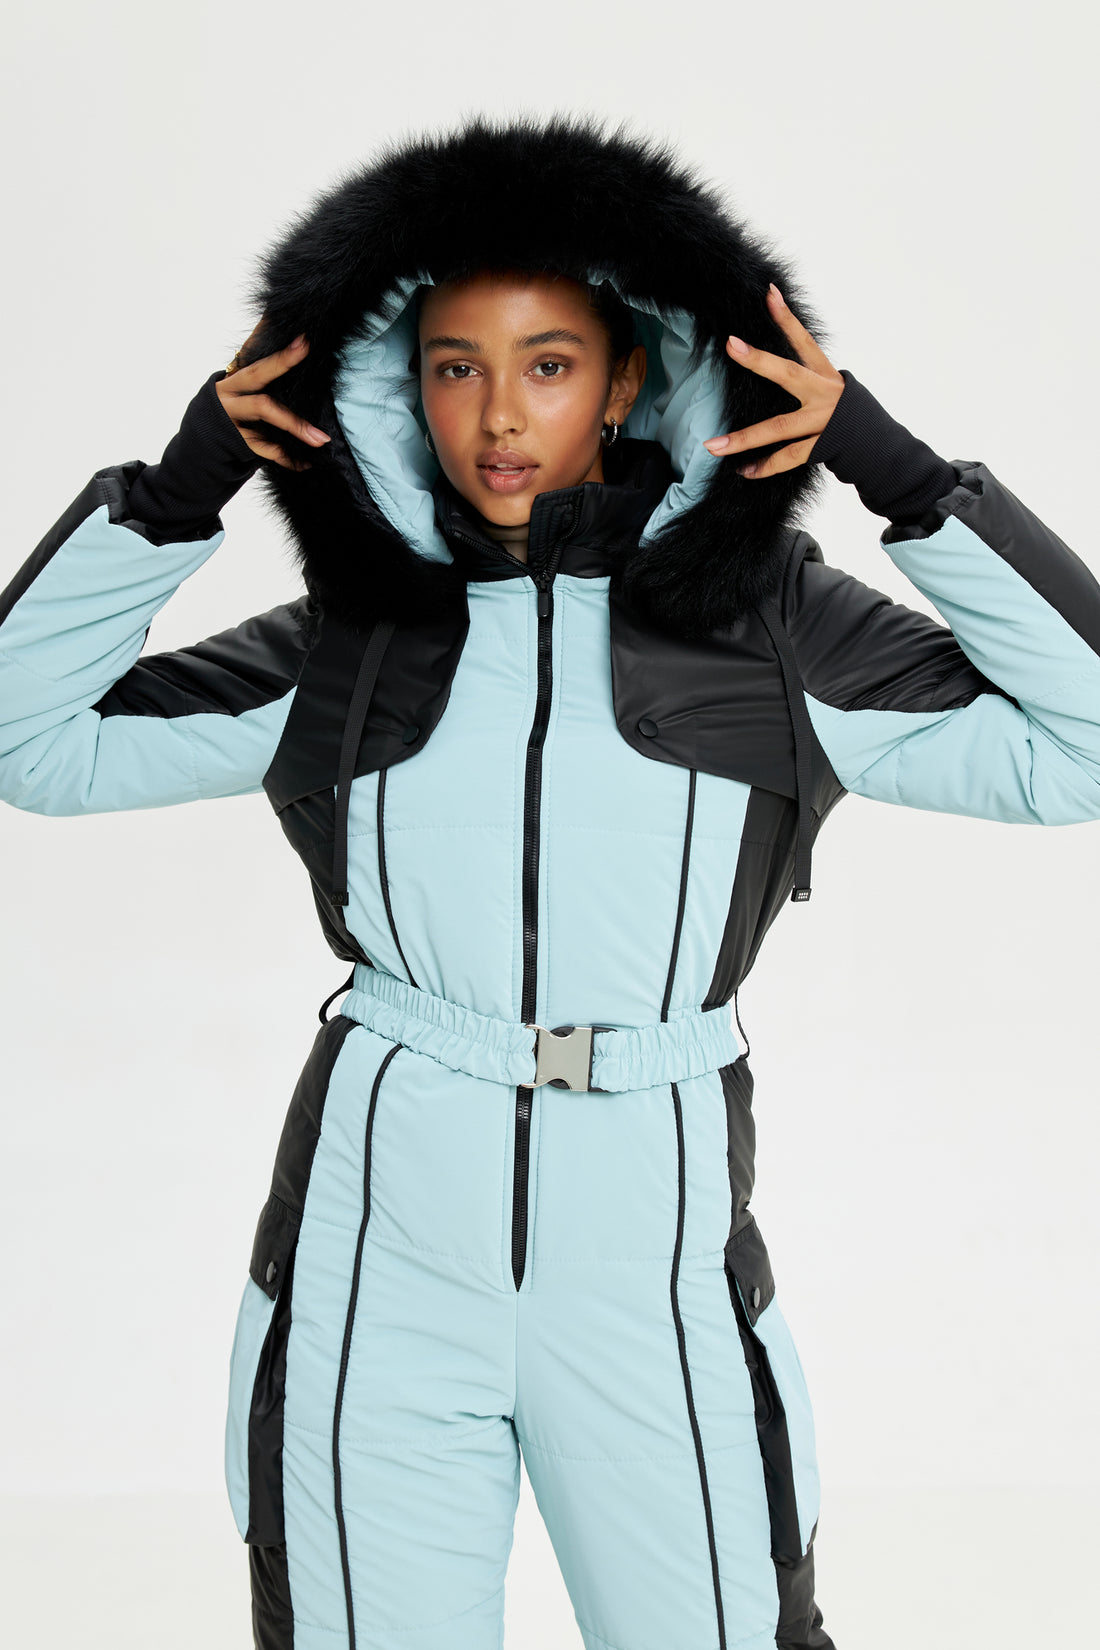 Light blue ski suit for women ETNA - Baby blue snowsuit - Ski jumpsuit outfit Skiwear fashion